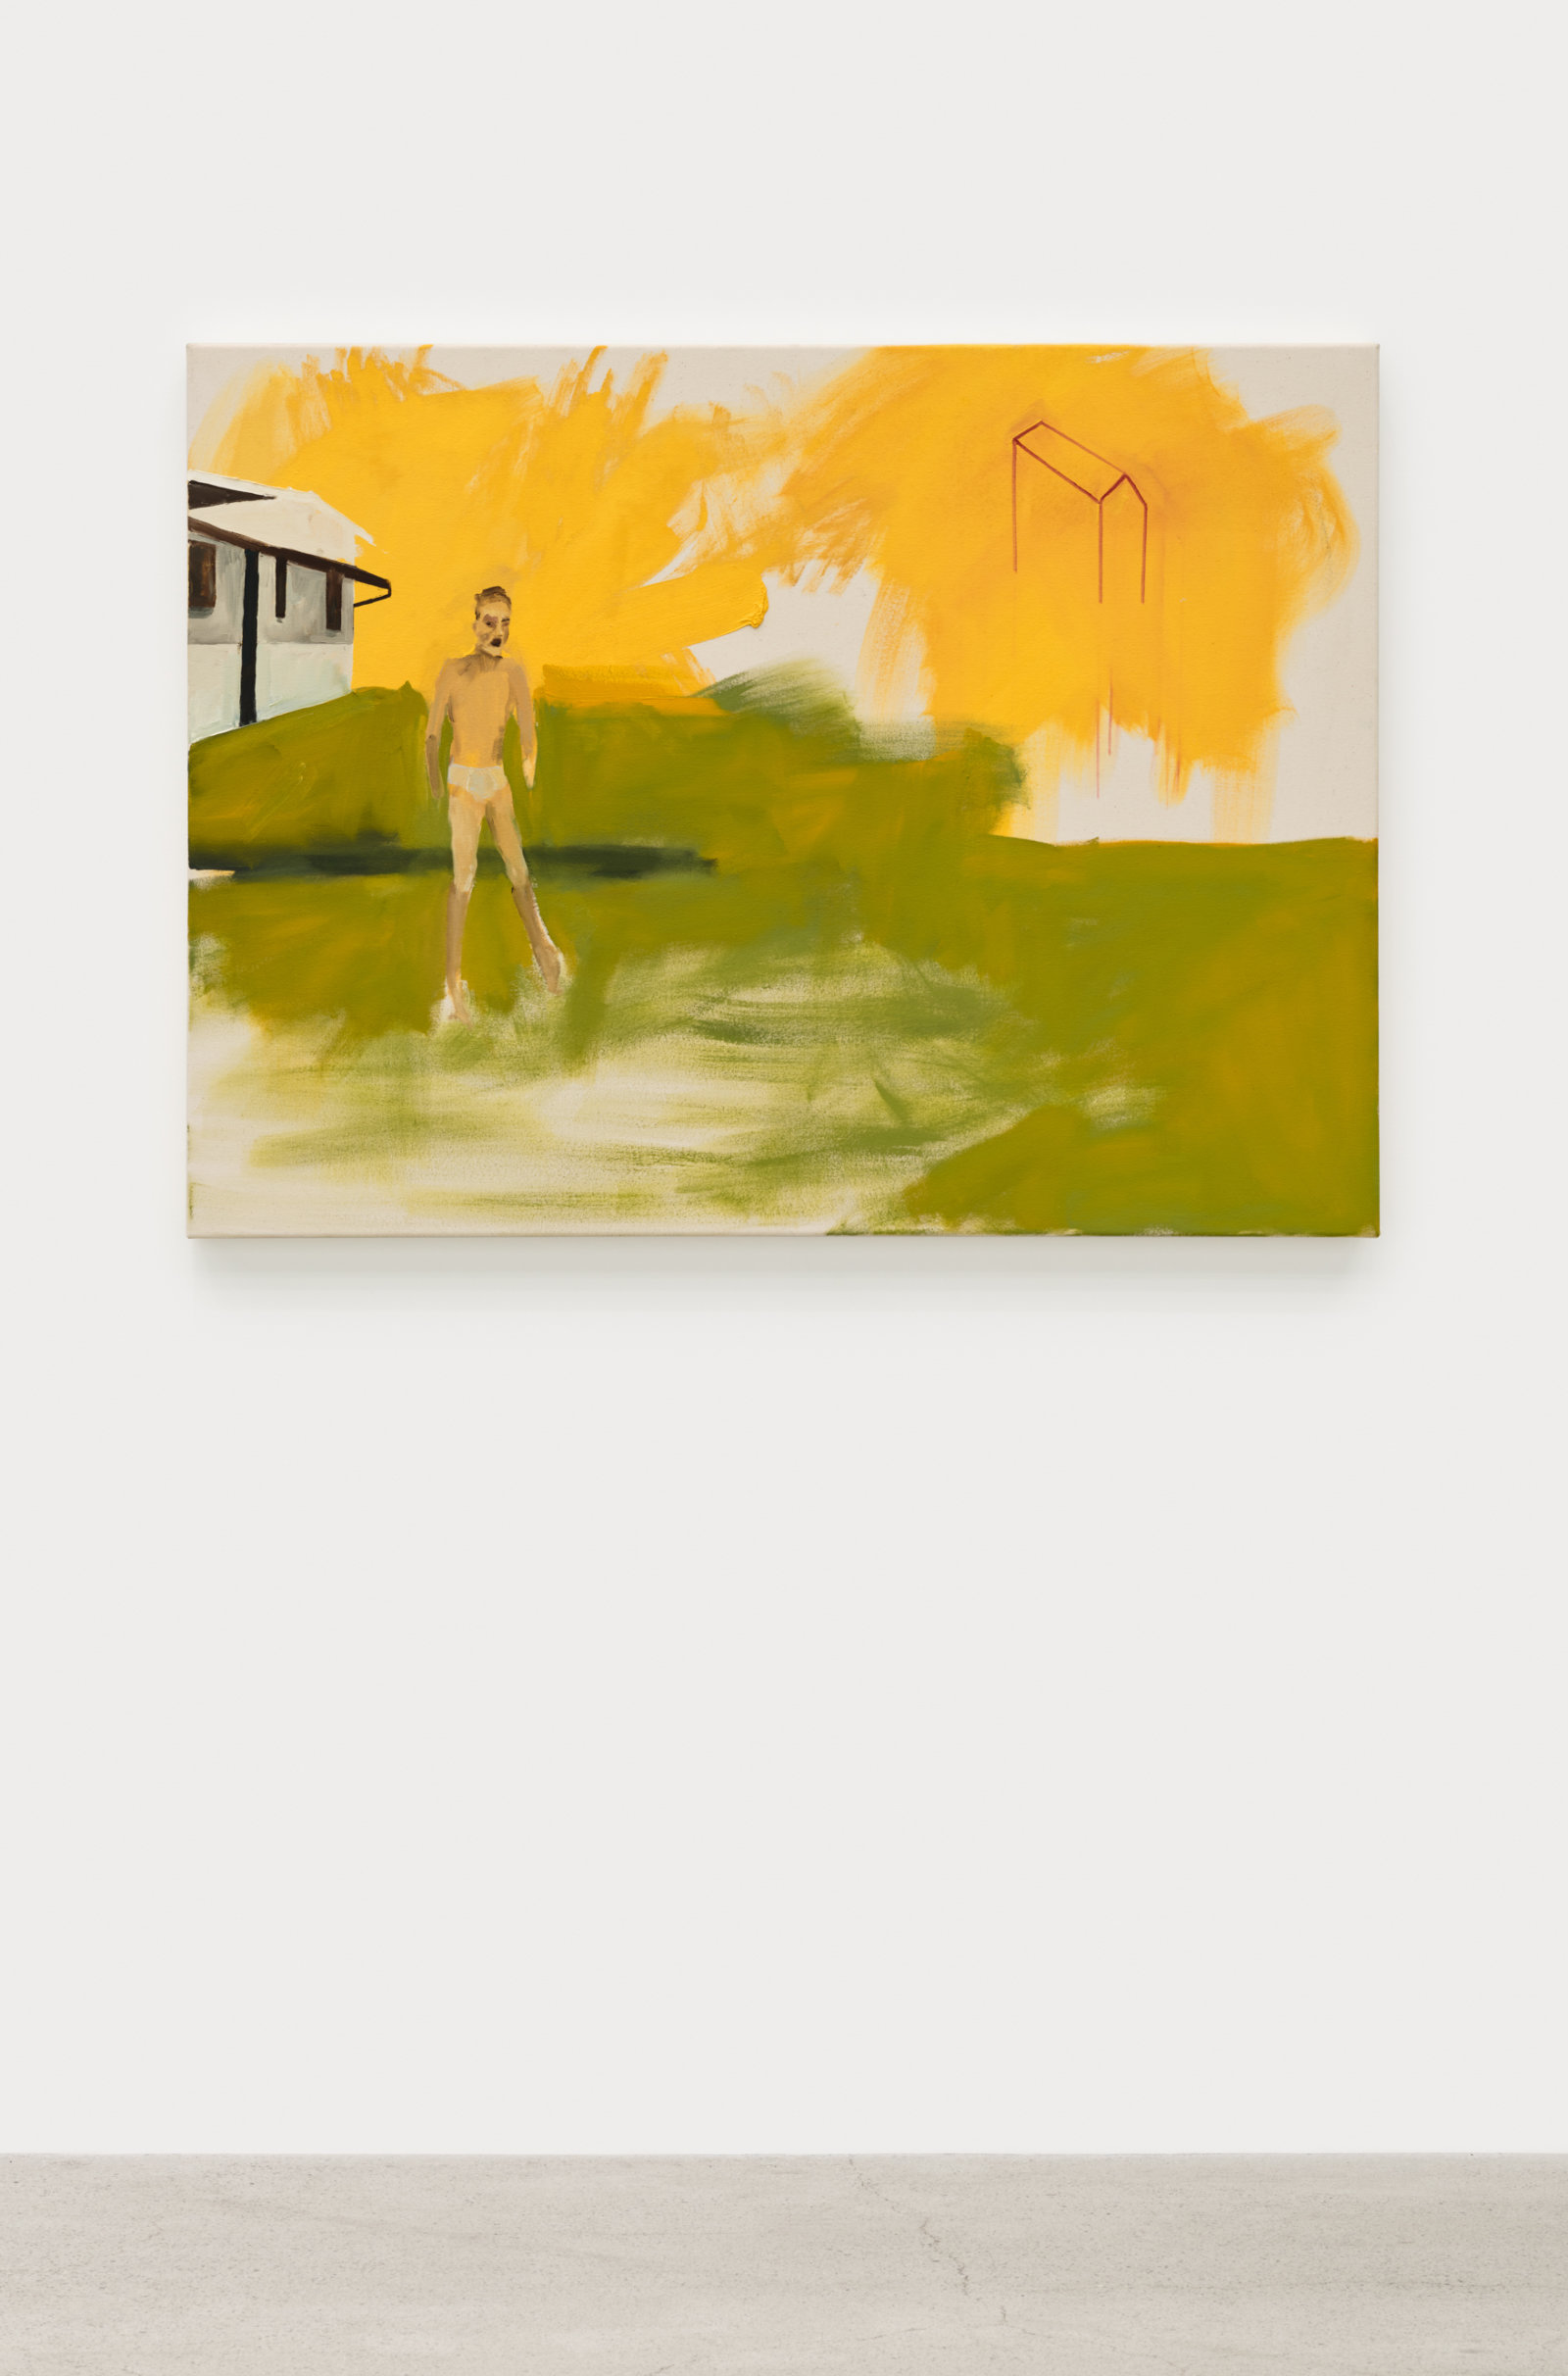 Brenda Draney, Evacuation, 2013, oil on canvas, 36 x 48 in. (91 x 122 cm)